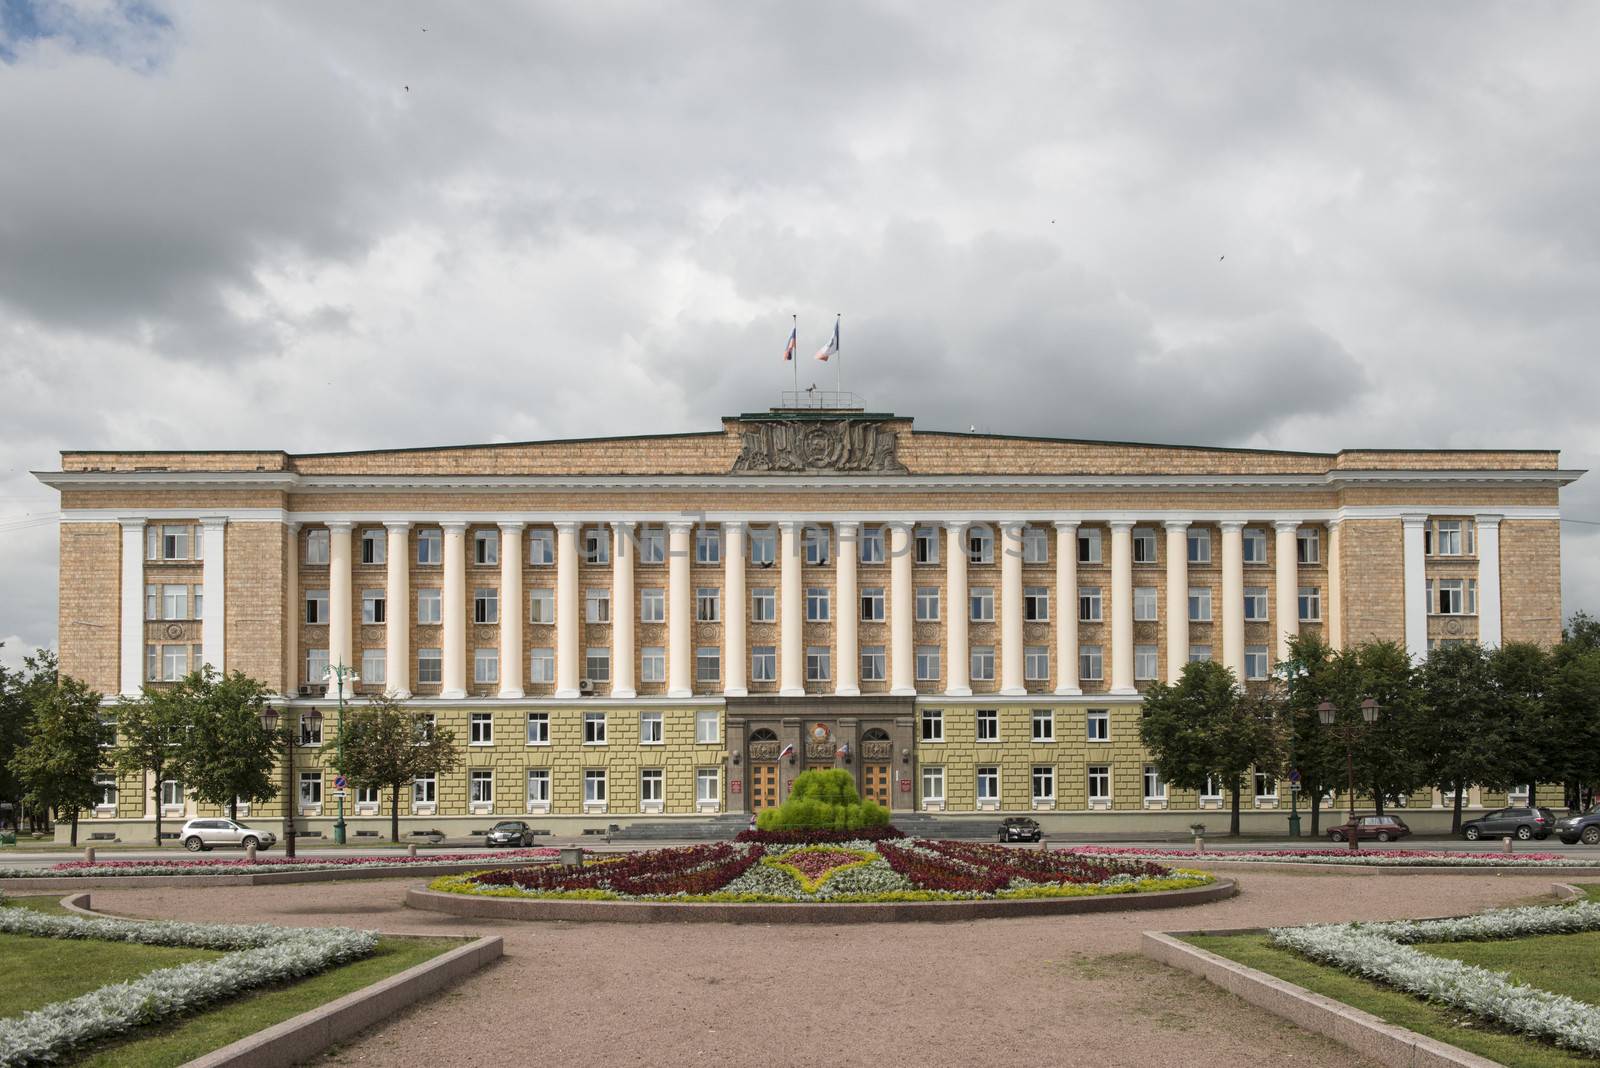 City Hall of Novgorod by Alenmax